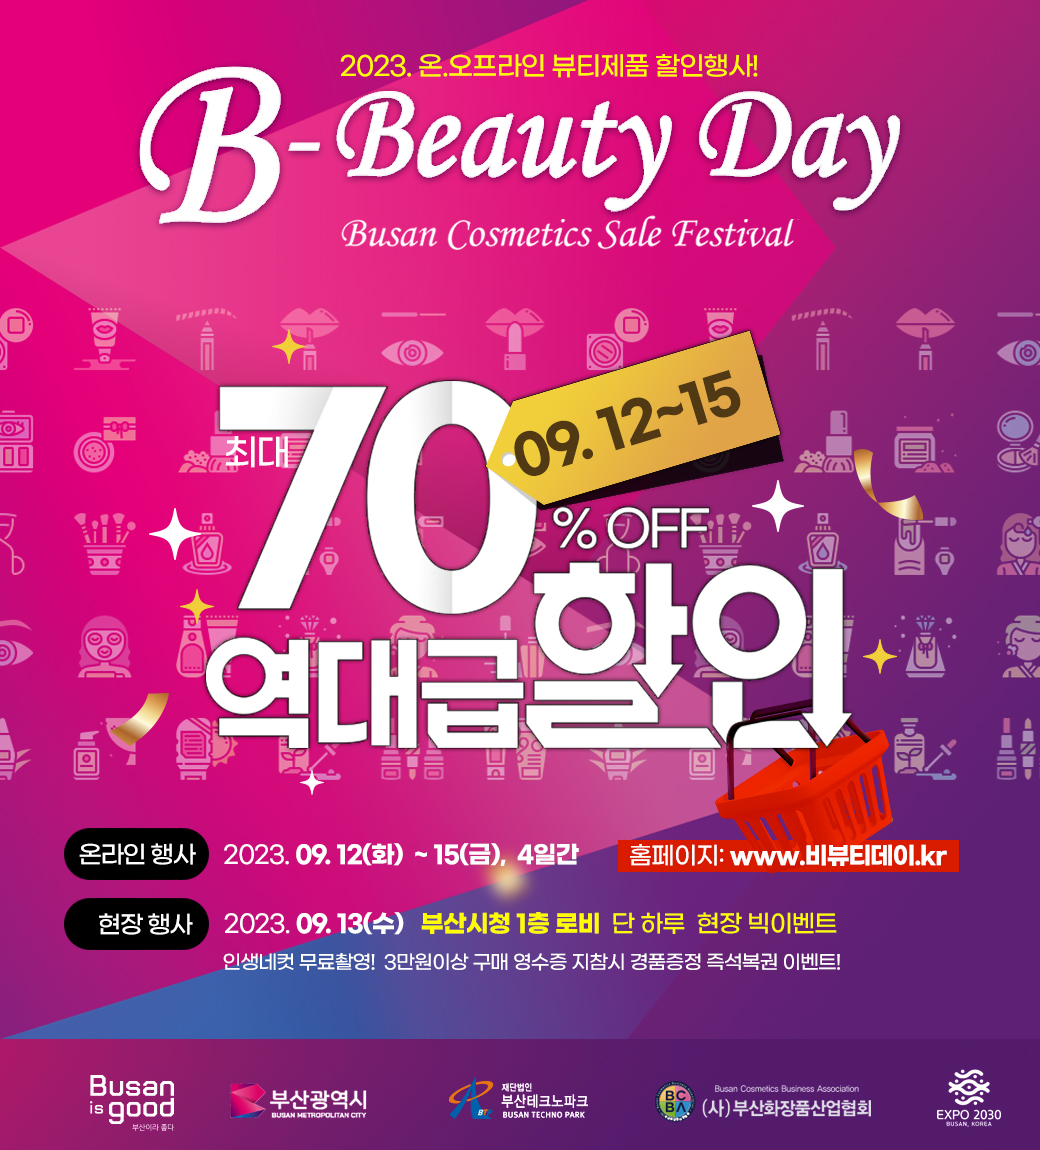 2023 온.오프라인 뷰티제품 할인행사!
B-Beauty Day
Busan Cosmetics Sale Festival 
09.12-15
70% OFF 역대급 할인
온라인 행사 2023.09.12(화)-15(금), 4일간 
홈페이지: www.비뷰티데이.kr
현장행사 2023.09.13(수) 부산시청 1층로비 단 하루 현장 빅이벤트
인생네컷 무료촬영! 3만원이상 구매 영수증 지참시 경품증정 즉성복권 이벤트!
Busan is good 부산광역시 부산테크노파크 (사)부산화장품산업협회 EXPO 2030 